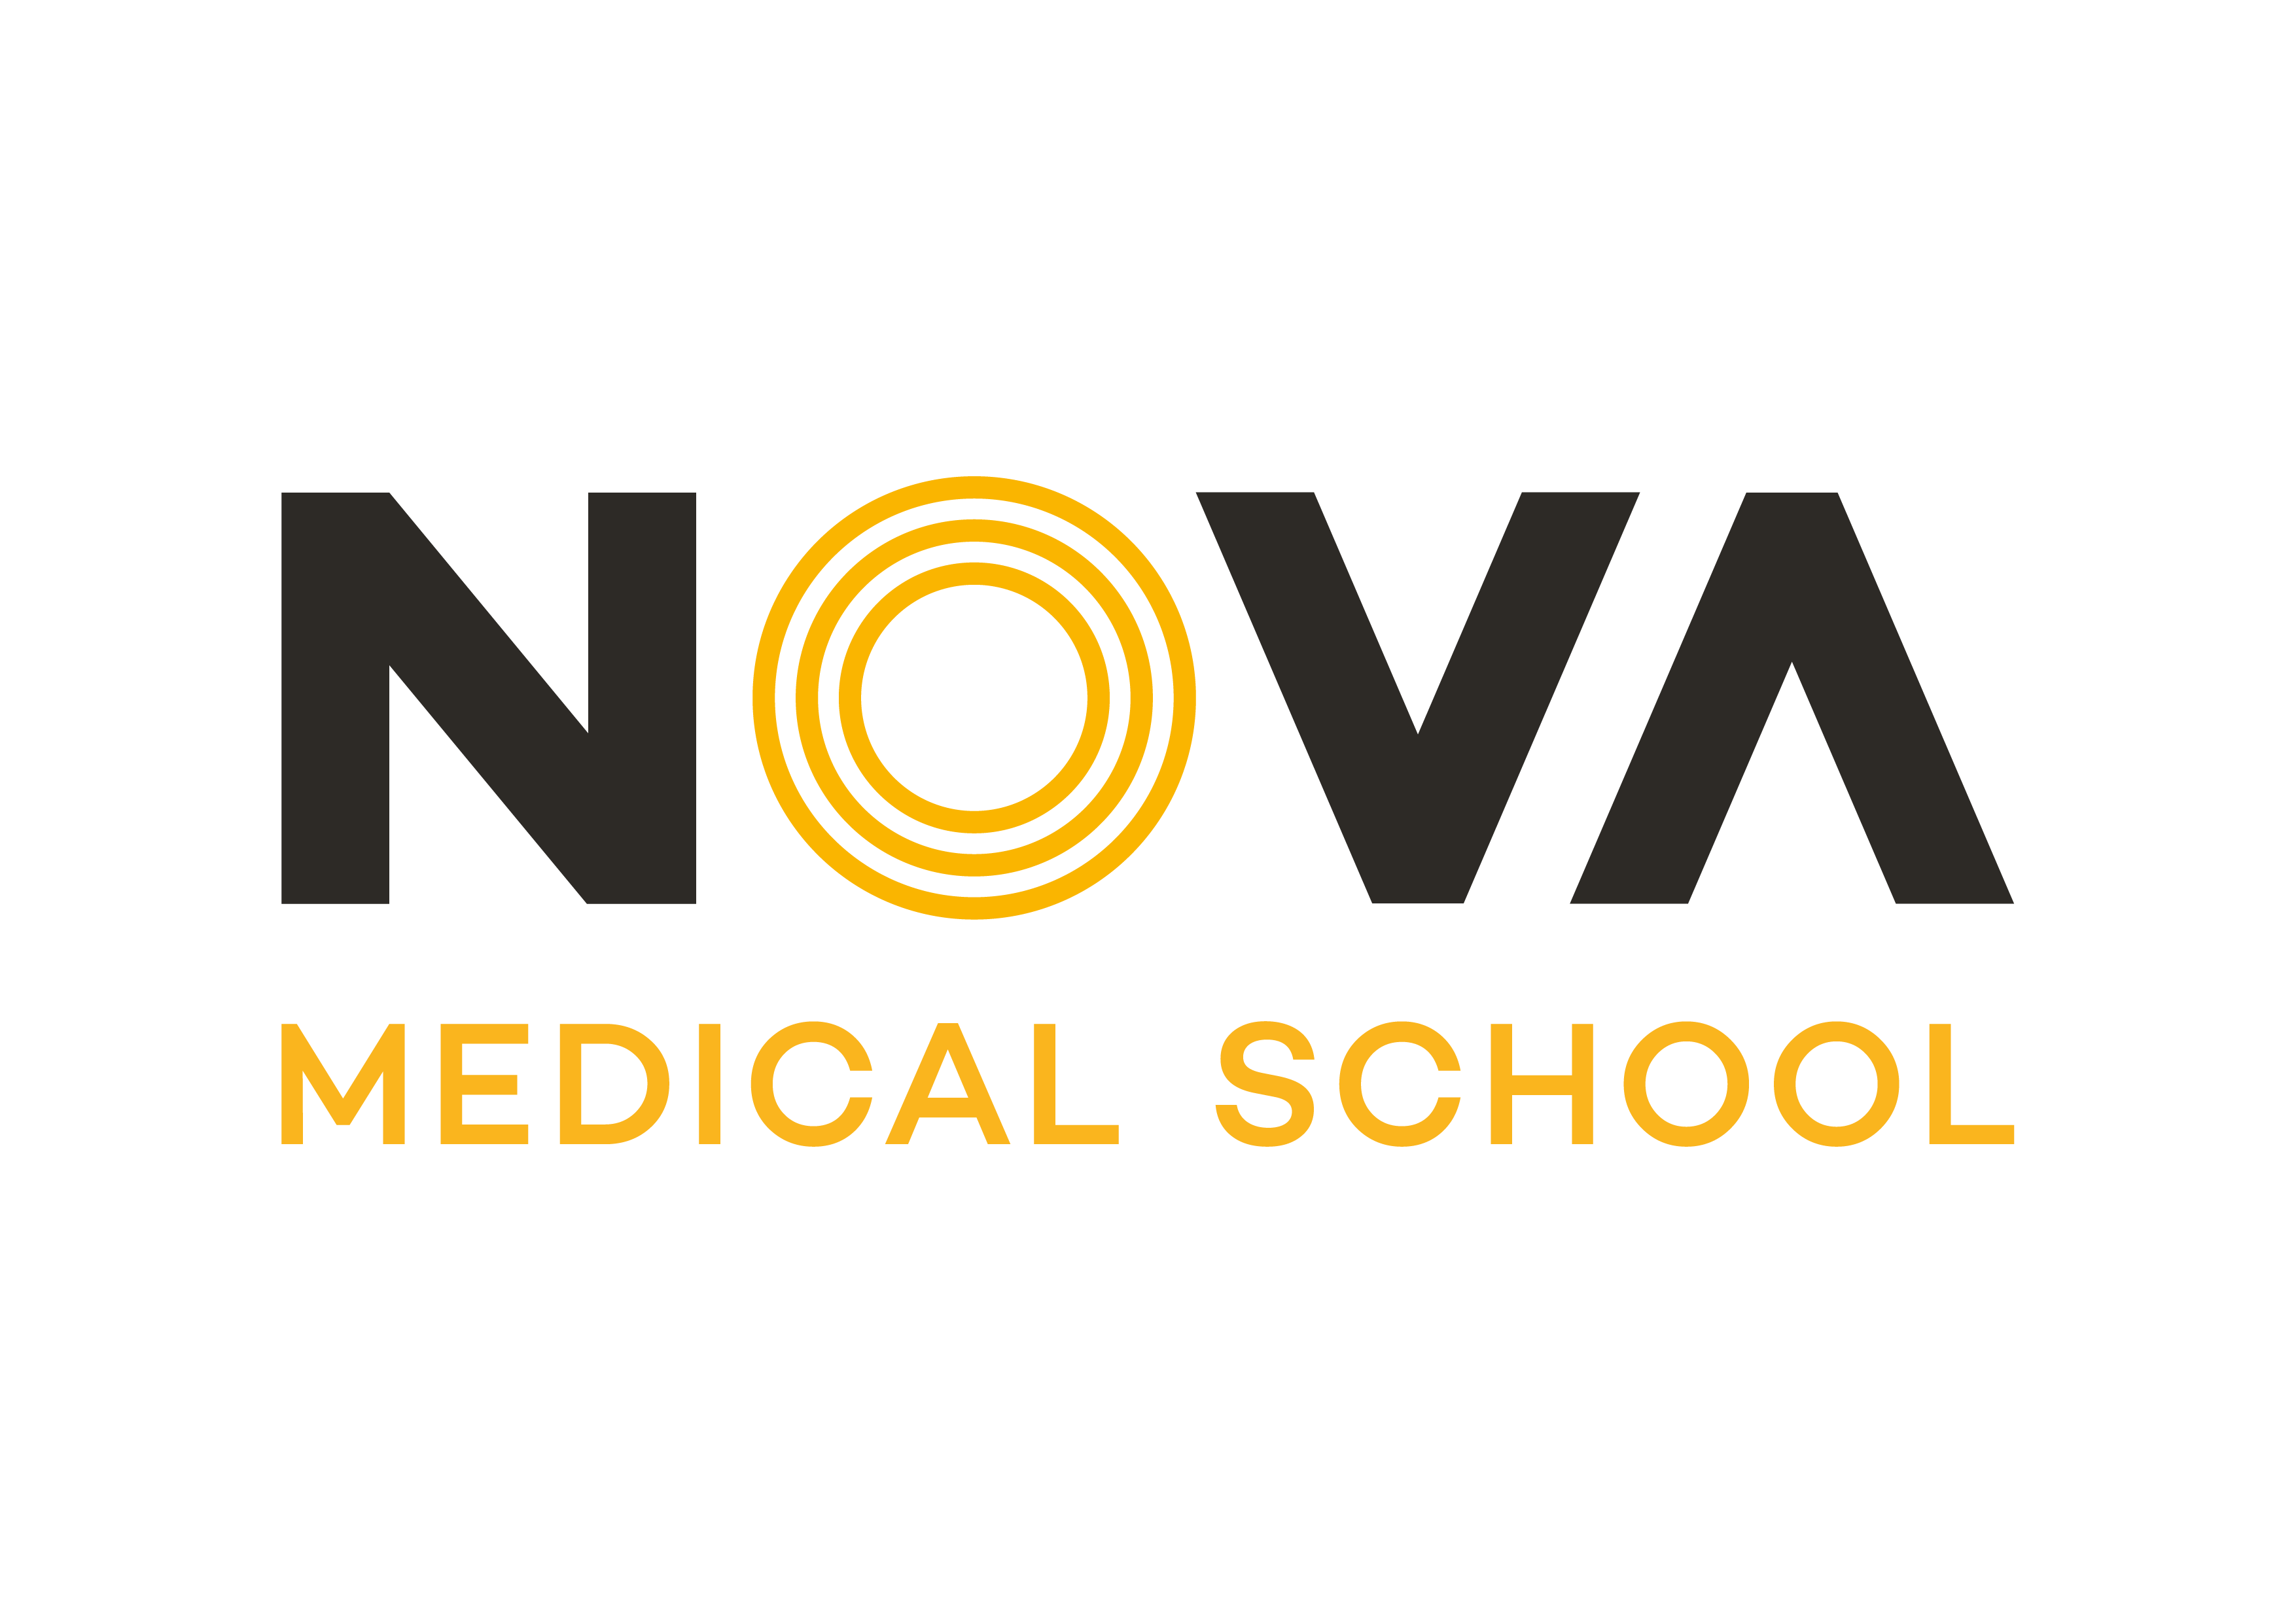 Nova Medical School